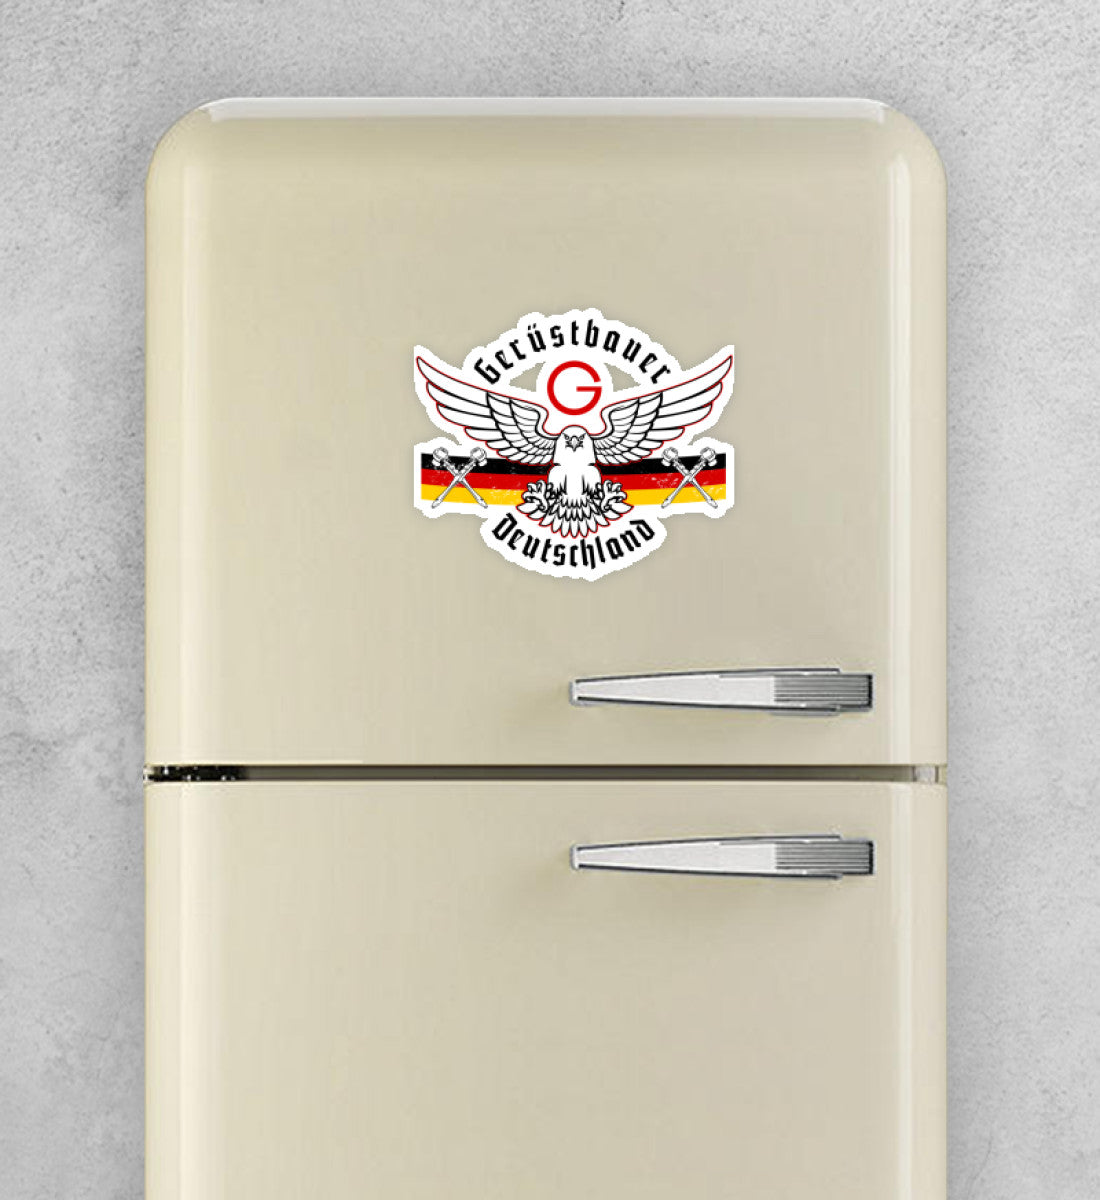 Gerüstbauer Deutschland  - Sticker 20x20 €9.95 Gerüstbauer - Shop >>